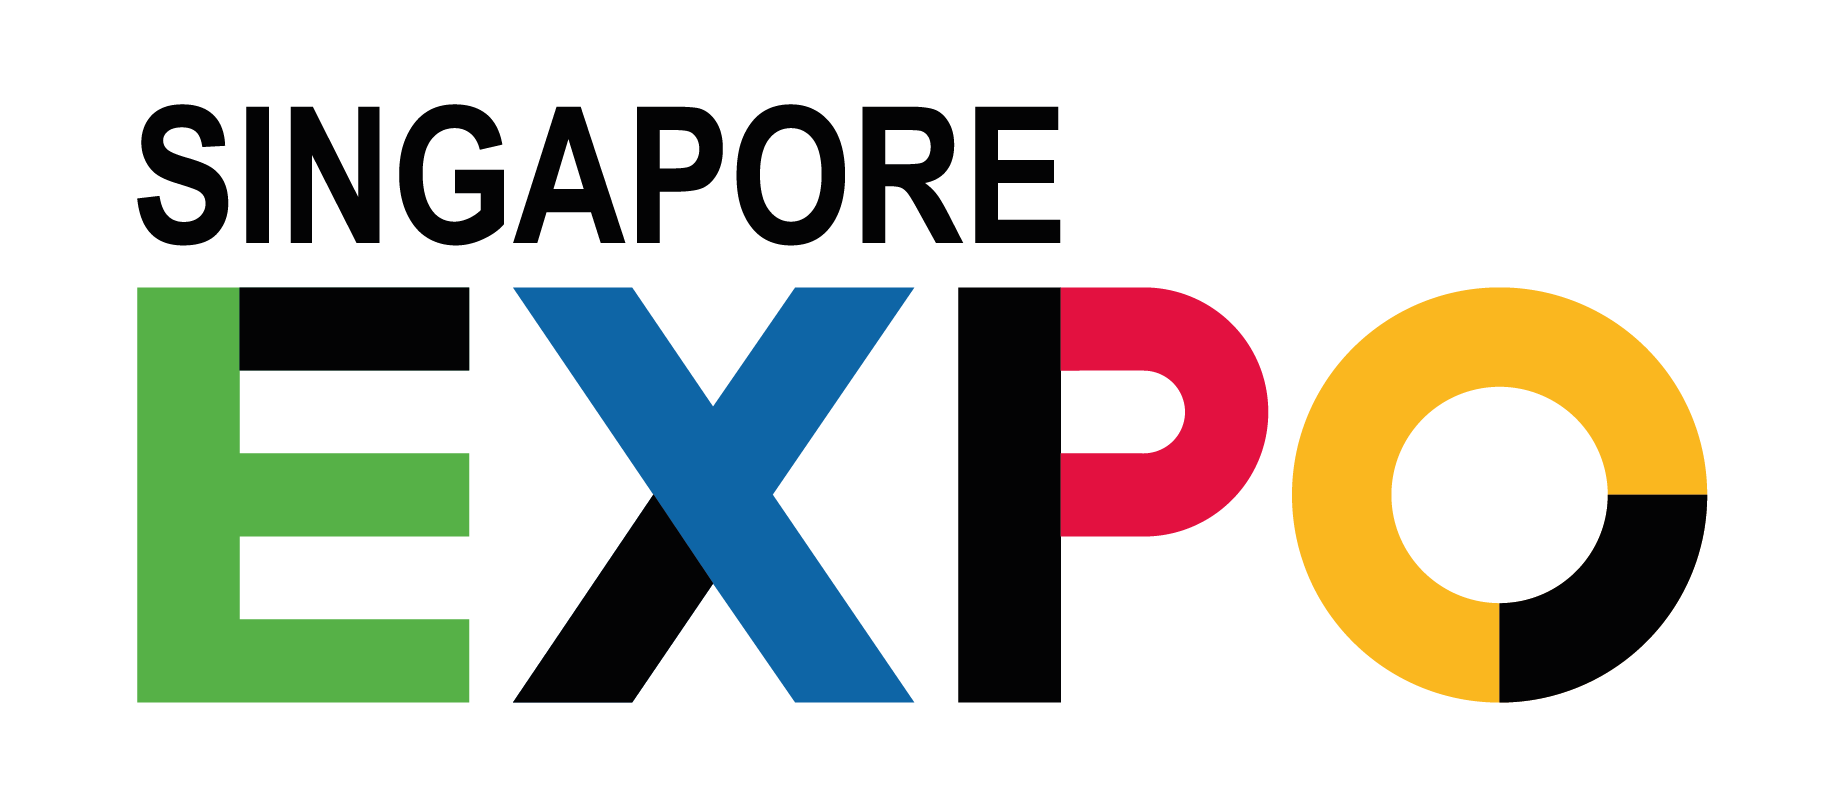 Visit the Singapore EXPO & MAX Atria